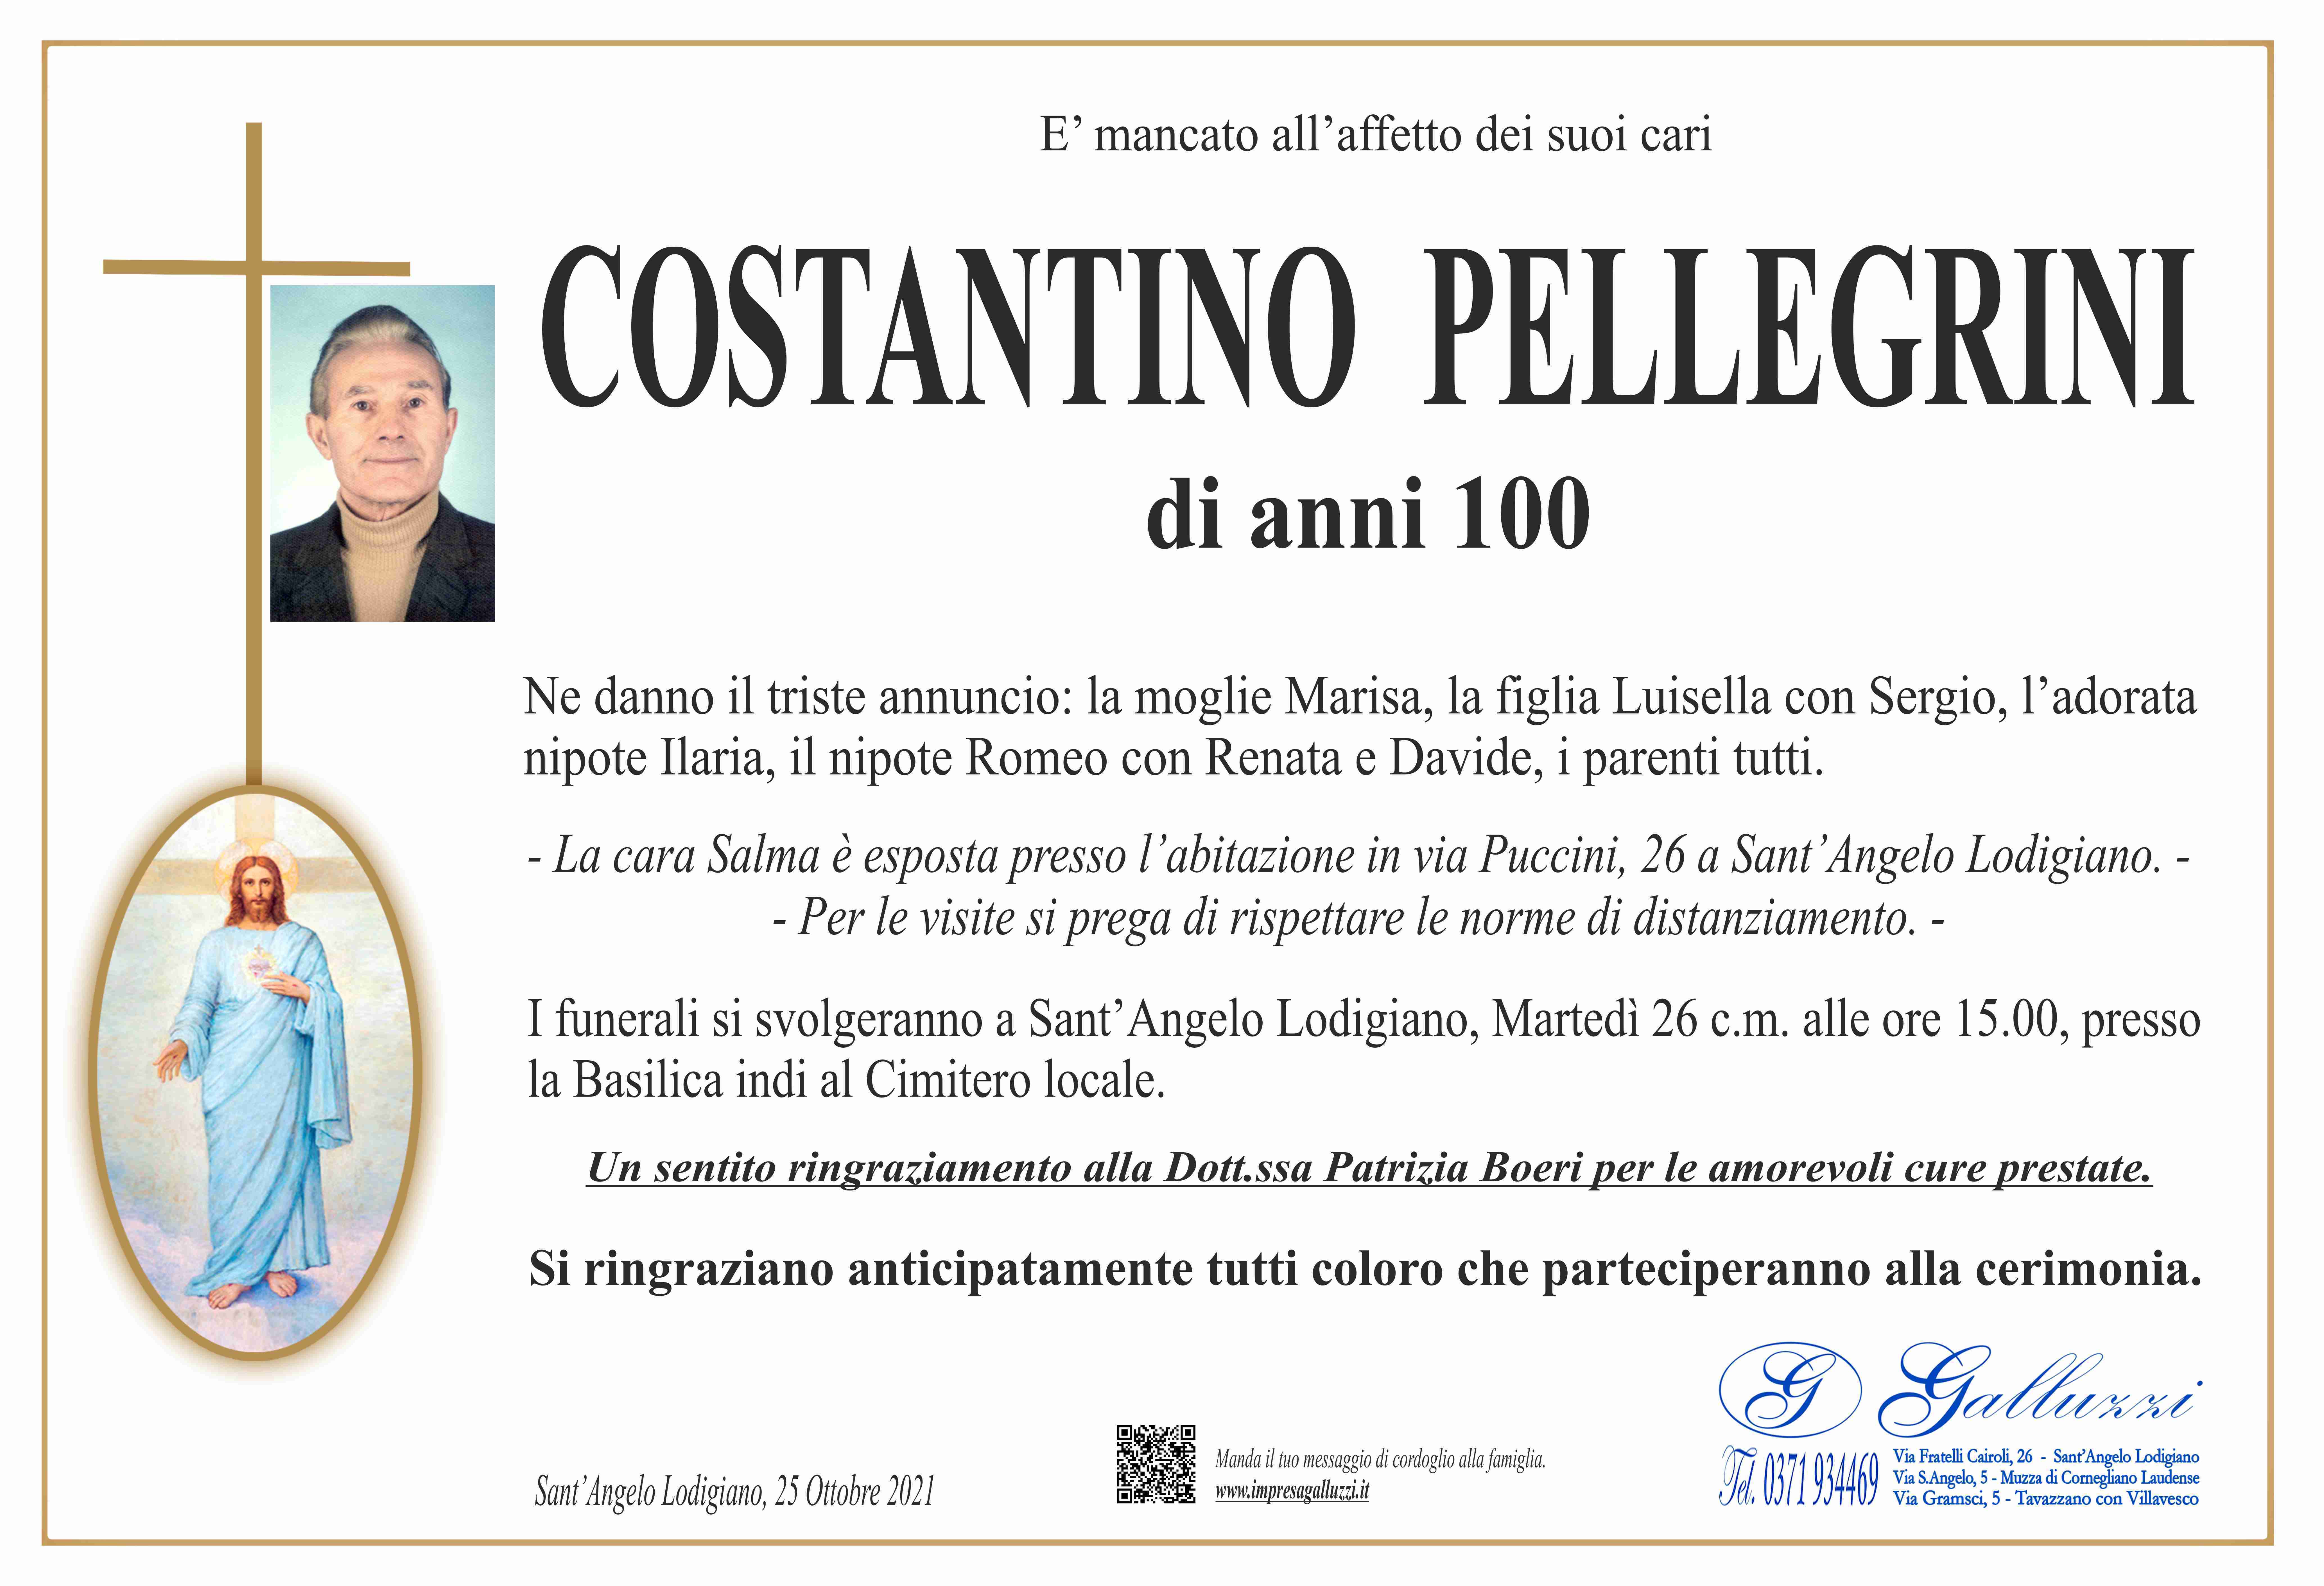 Costantino Pellegrini